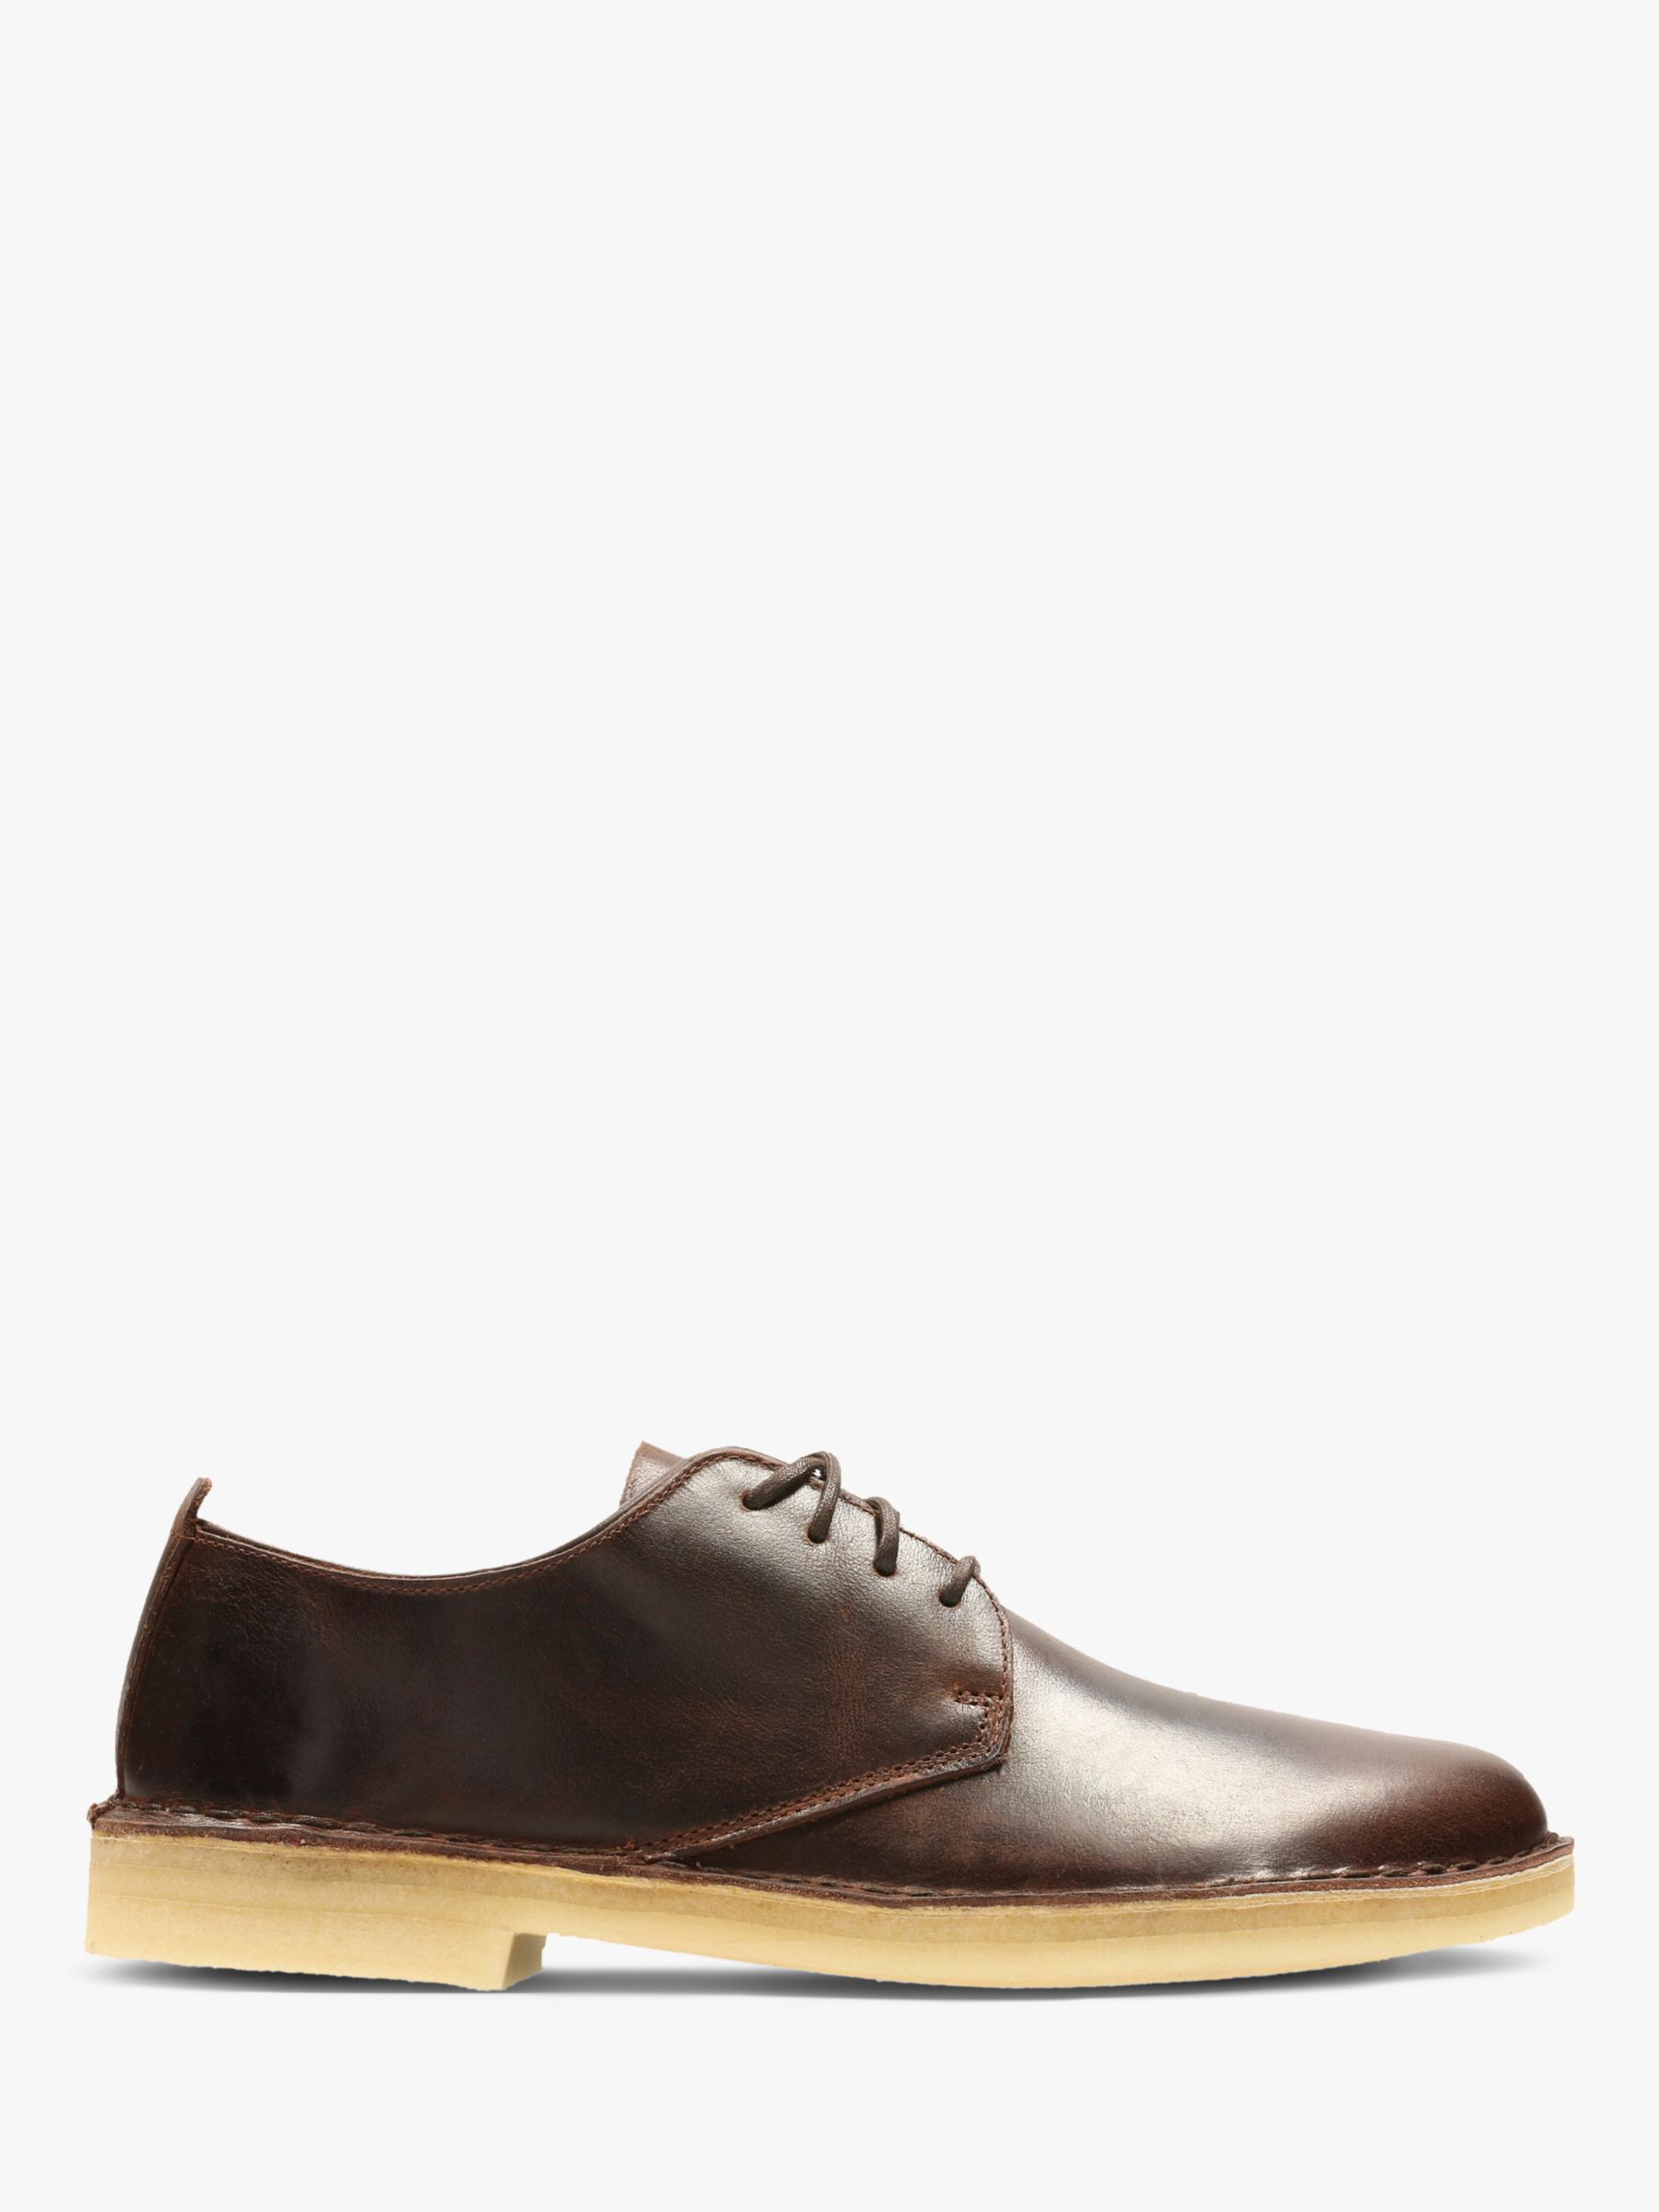 Originals London Leather Shoes, Chestnut, 6